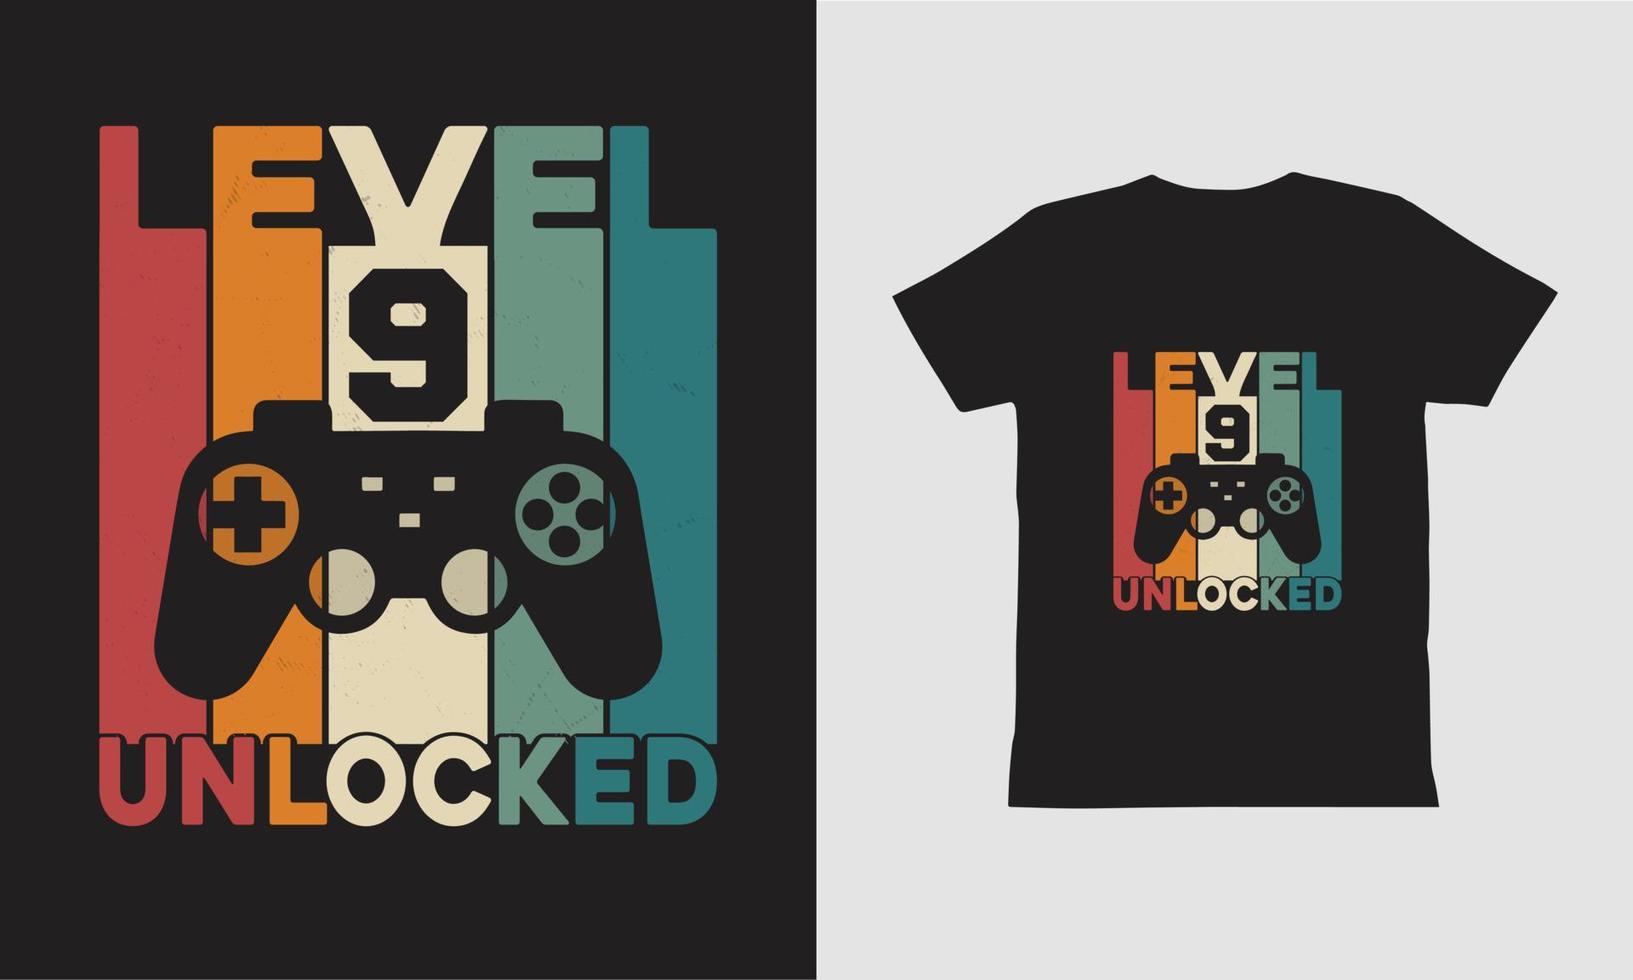 diseño de camiseta de juego desbloqueado de nivel 9. vector